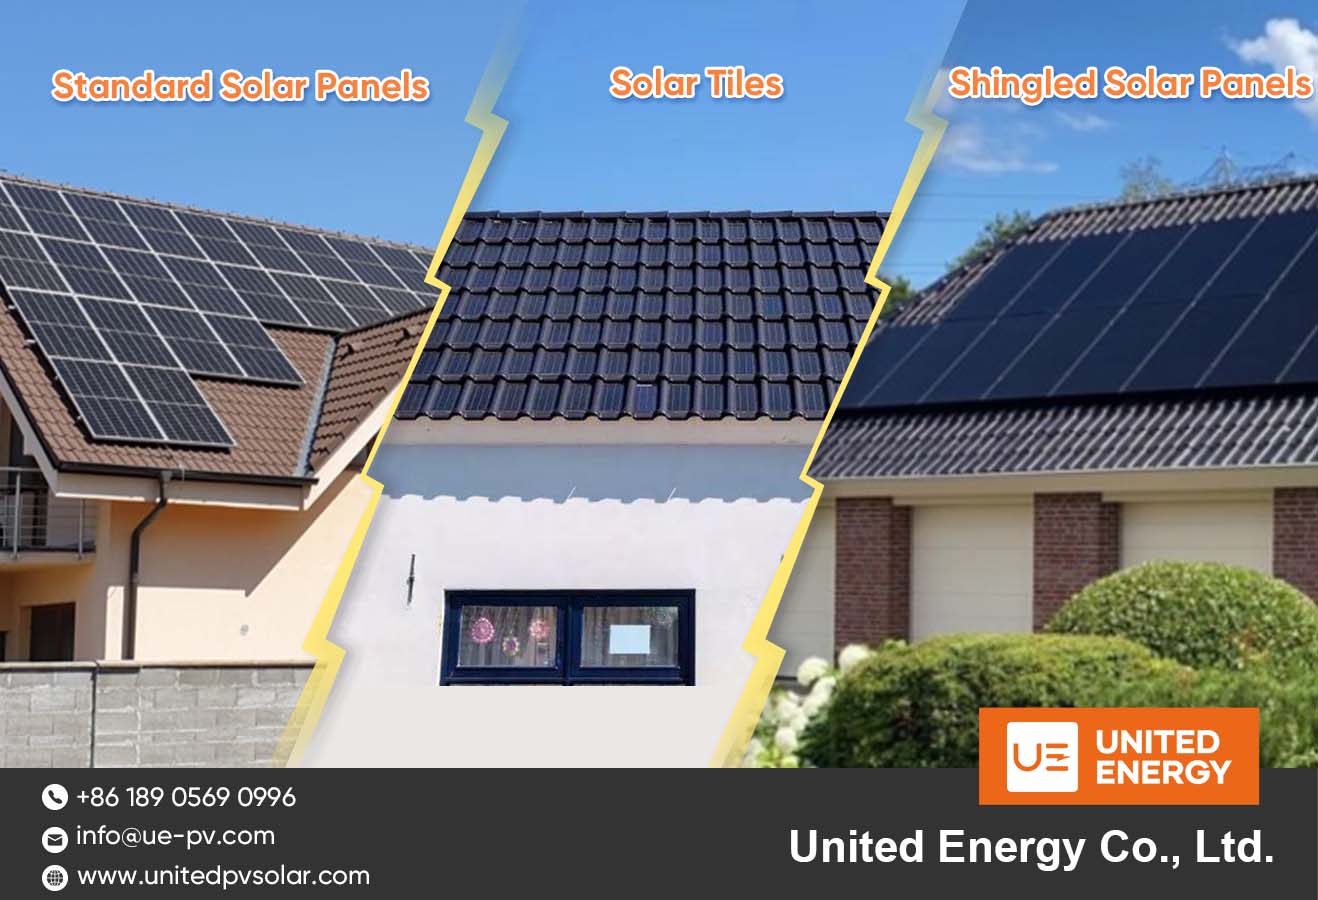 الألواح الشمسية المتشابكة VS. بلاط الطاقة الشمسية VS. الألواح الشمسية القياسية